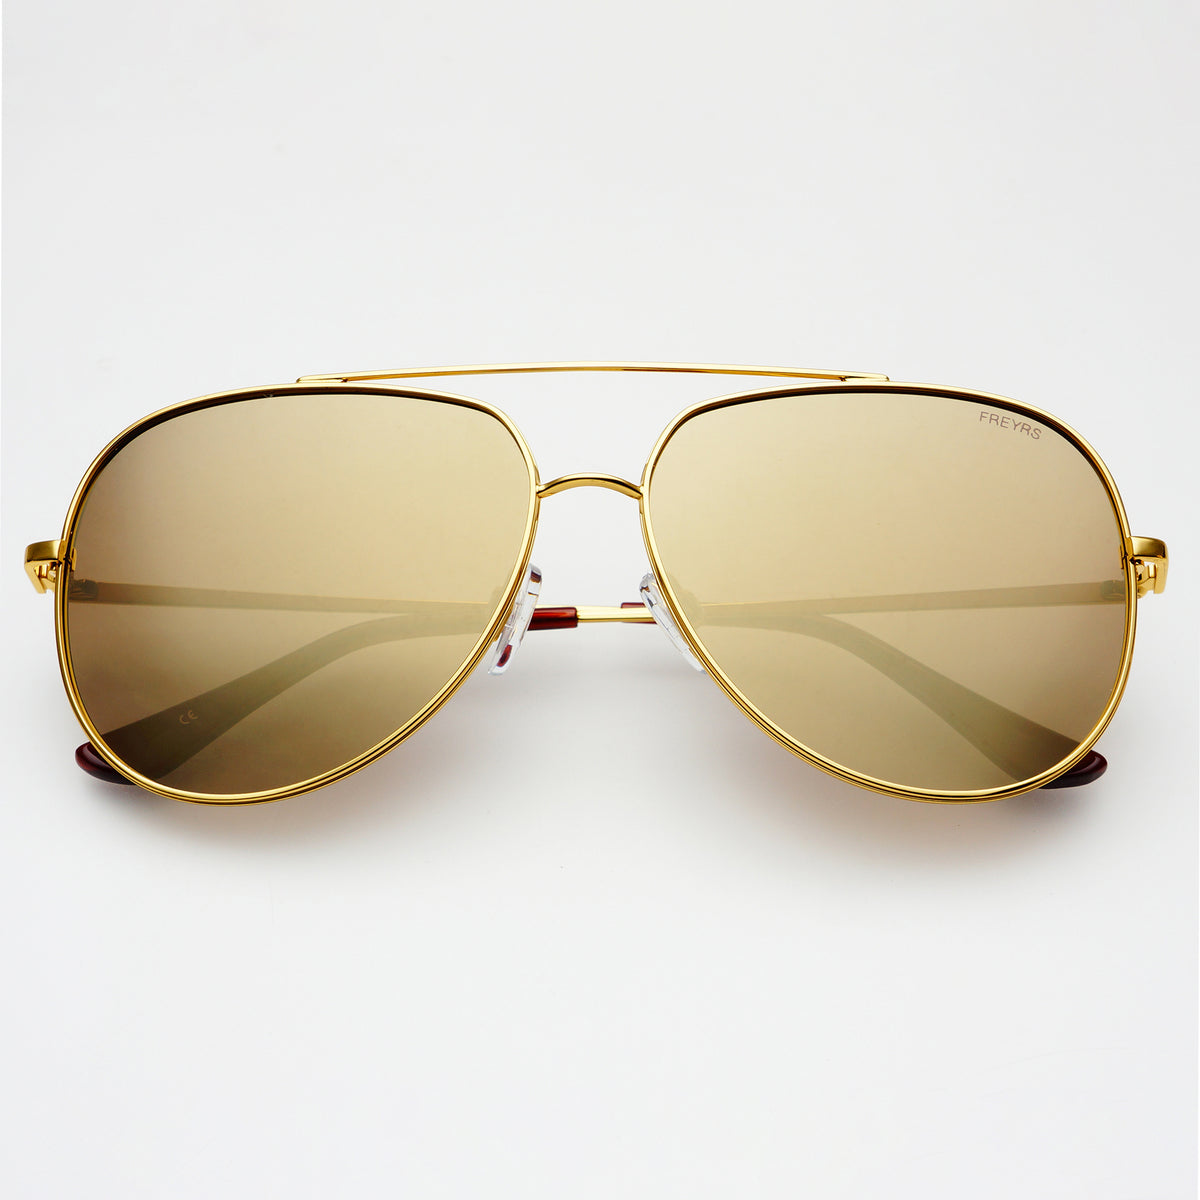 Gold Aviator Womens Mirrored Sunglasses Max Mens Large